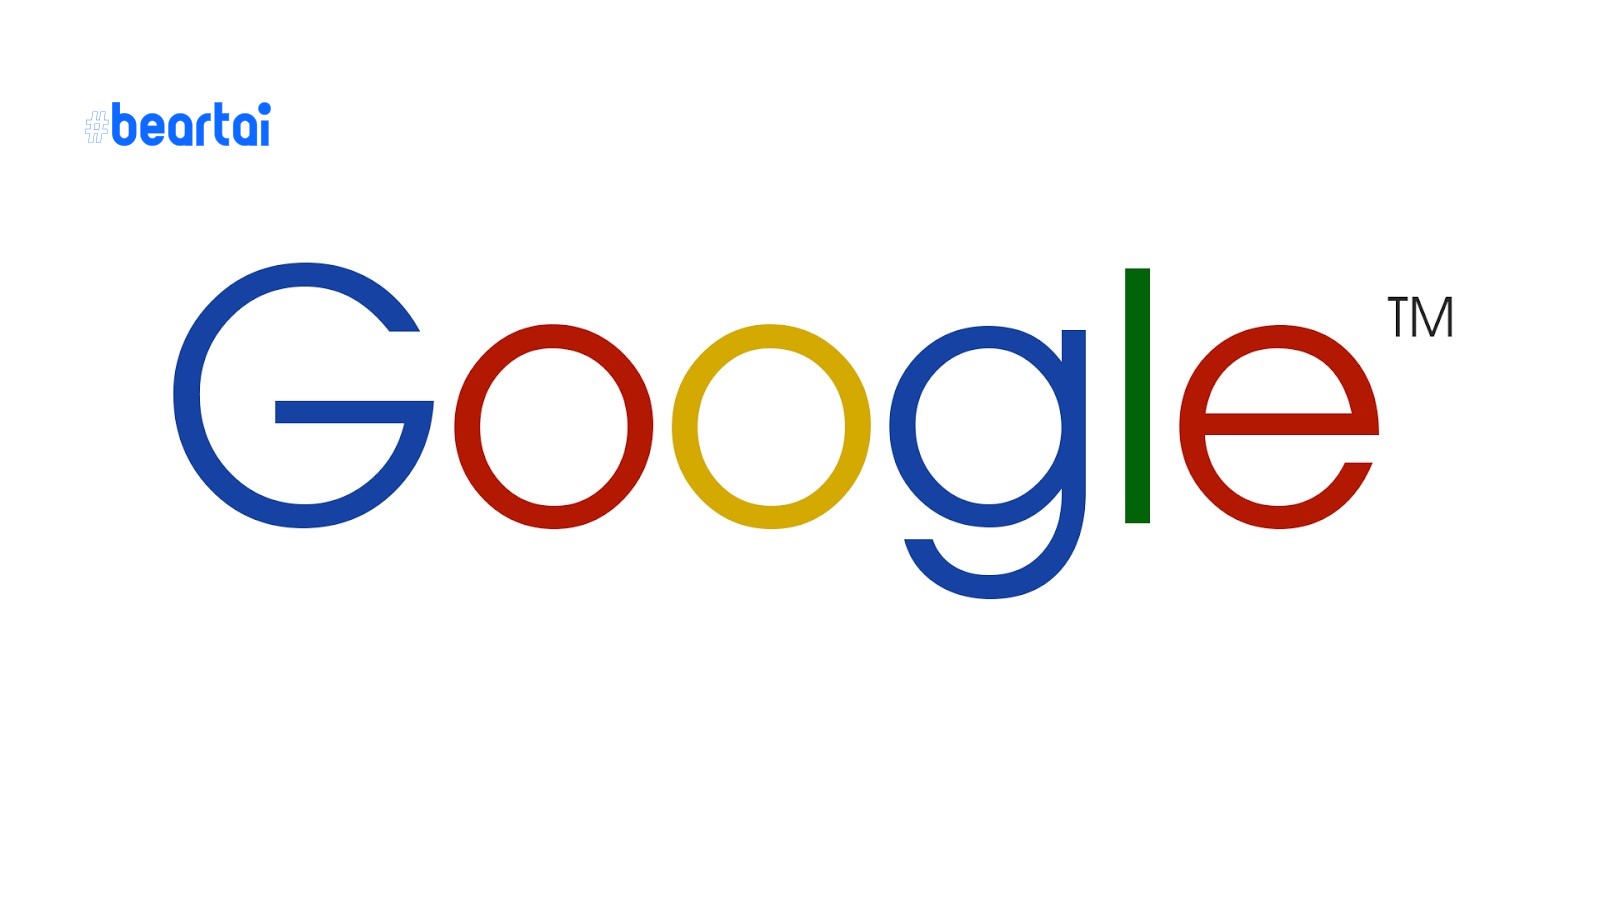 Alphabet บริษัทแม่ของ Google บริจาคกว่า 800 ล้านเหรียญสหรัฐฯ รับมือวิกฤต COVID-19